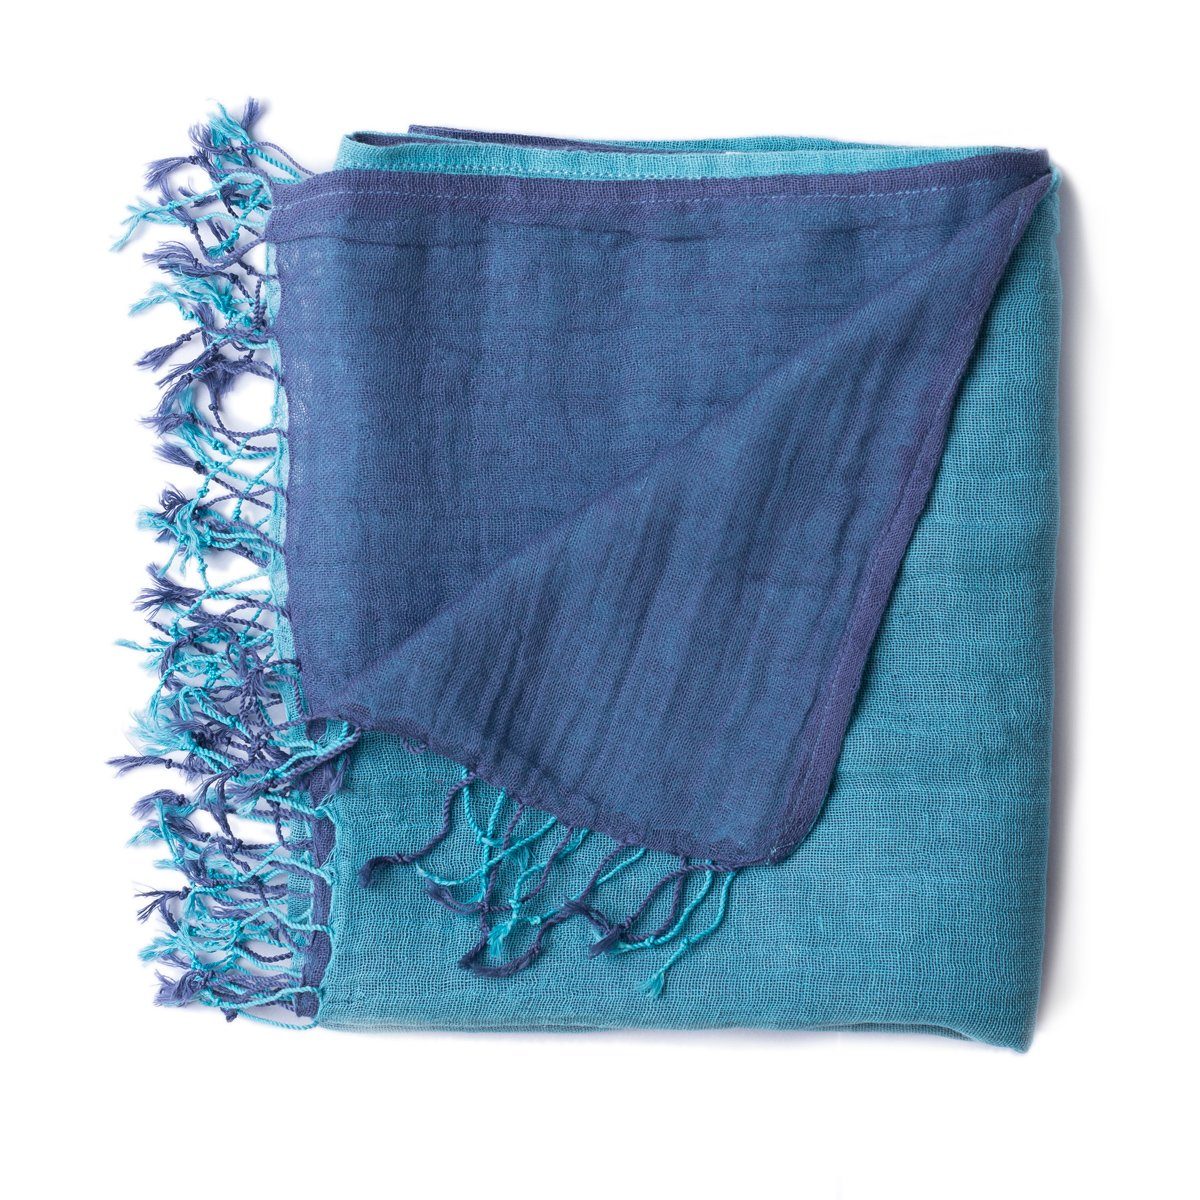 PANASIAM Halstuch elegantes Schultertuch zweifarbig auch als Schal oder Stola tragbar, in schönen farbigen Designs mit kleinen Fransen aus Baumwolle blau hellblau